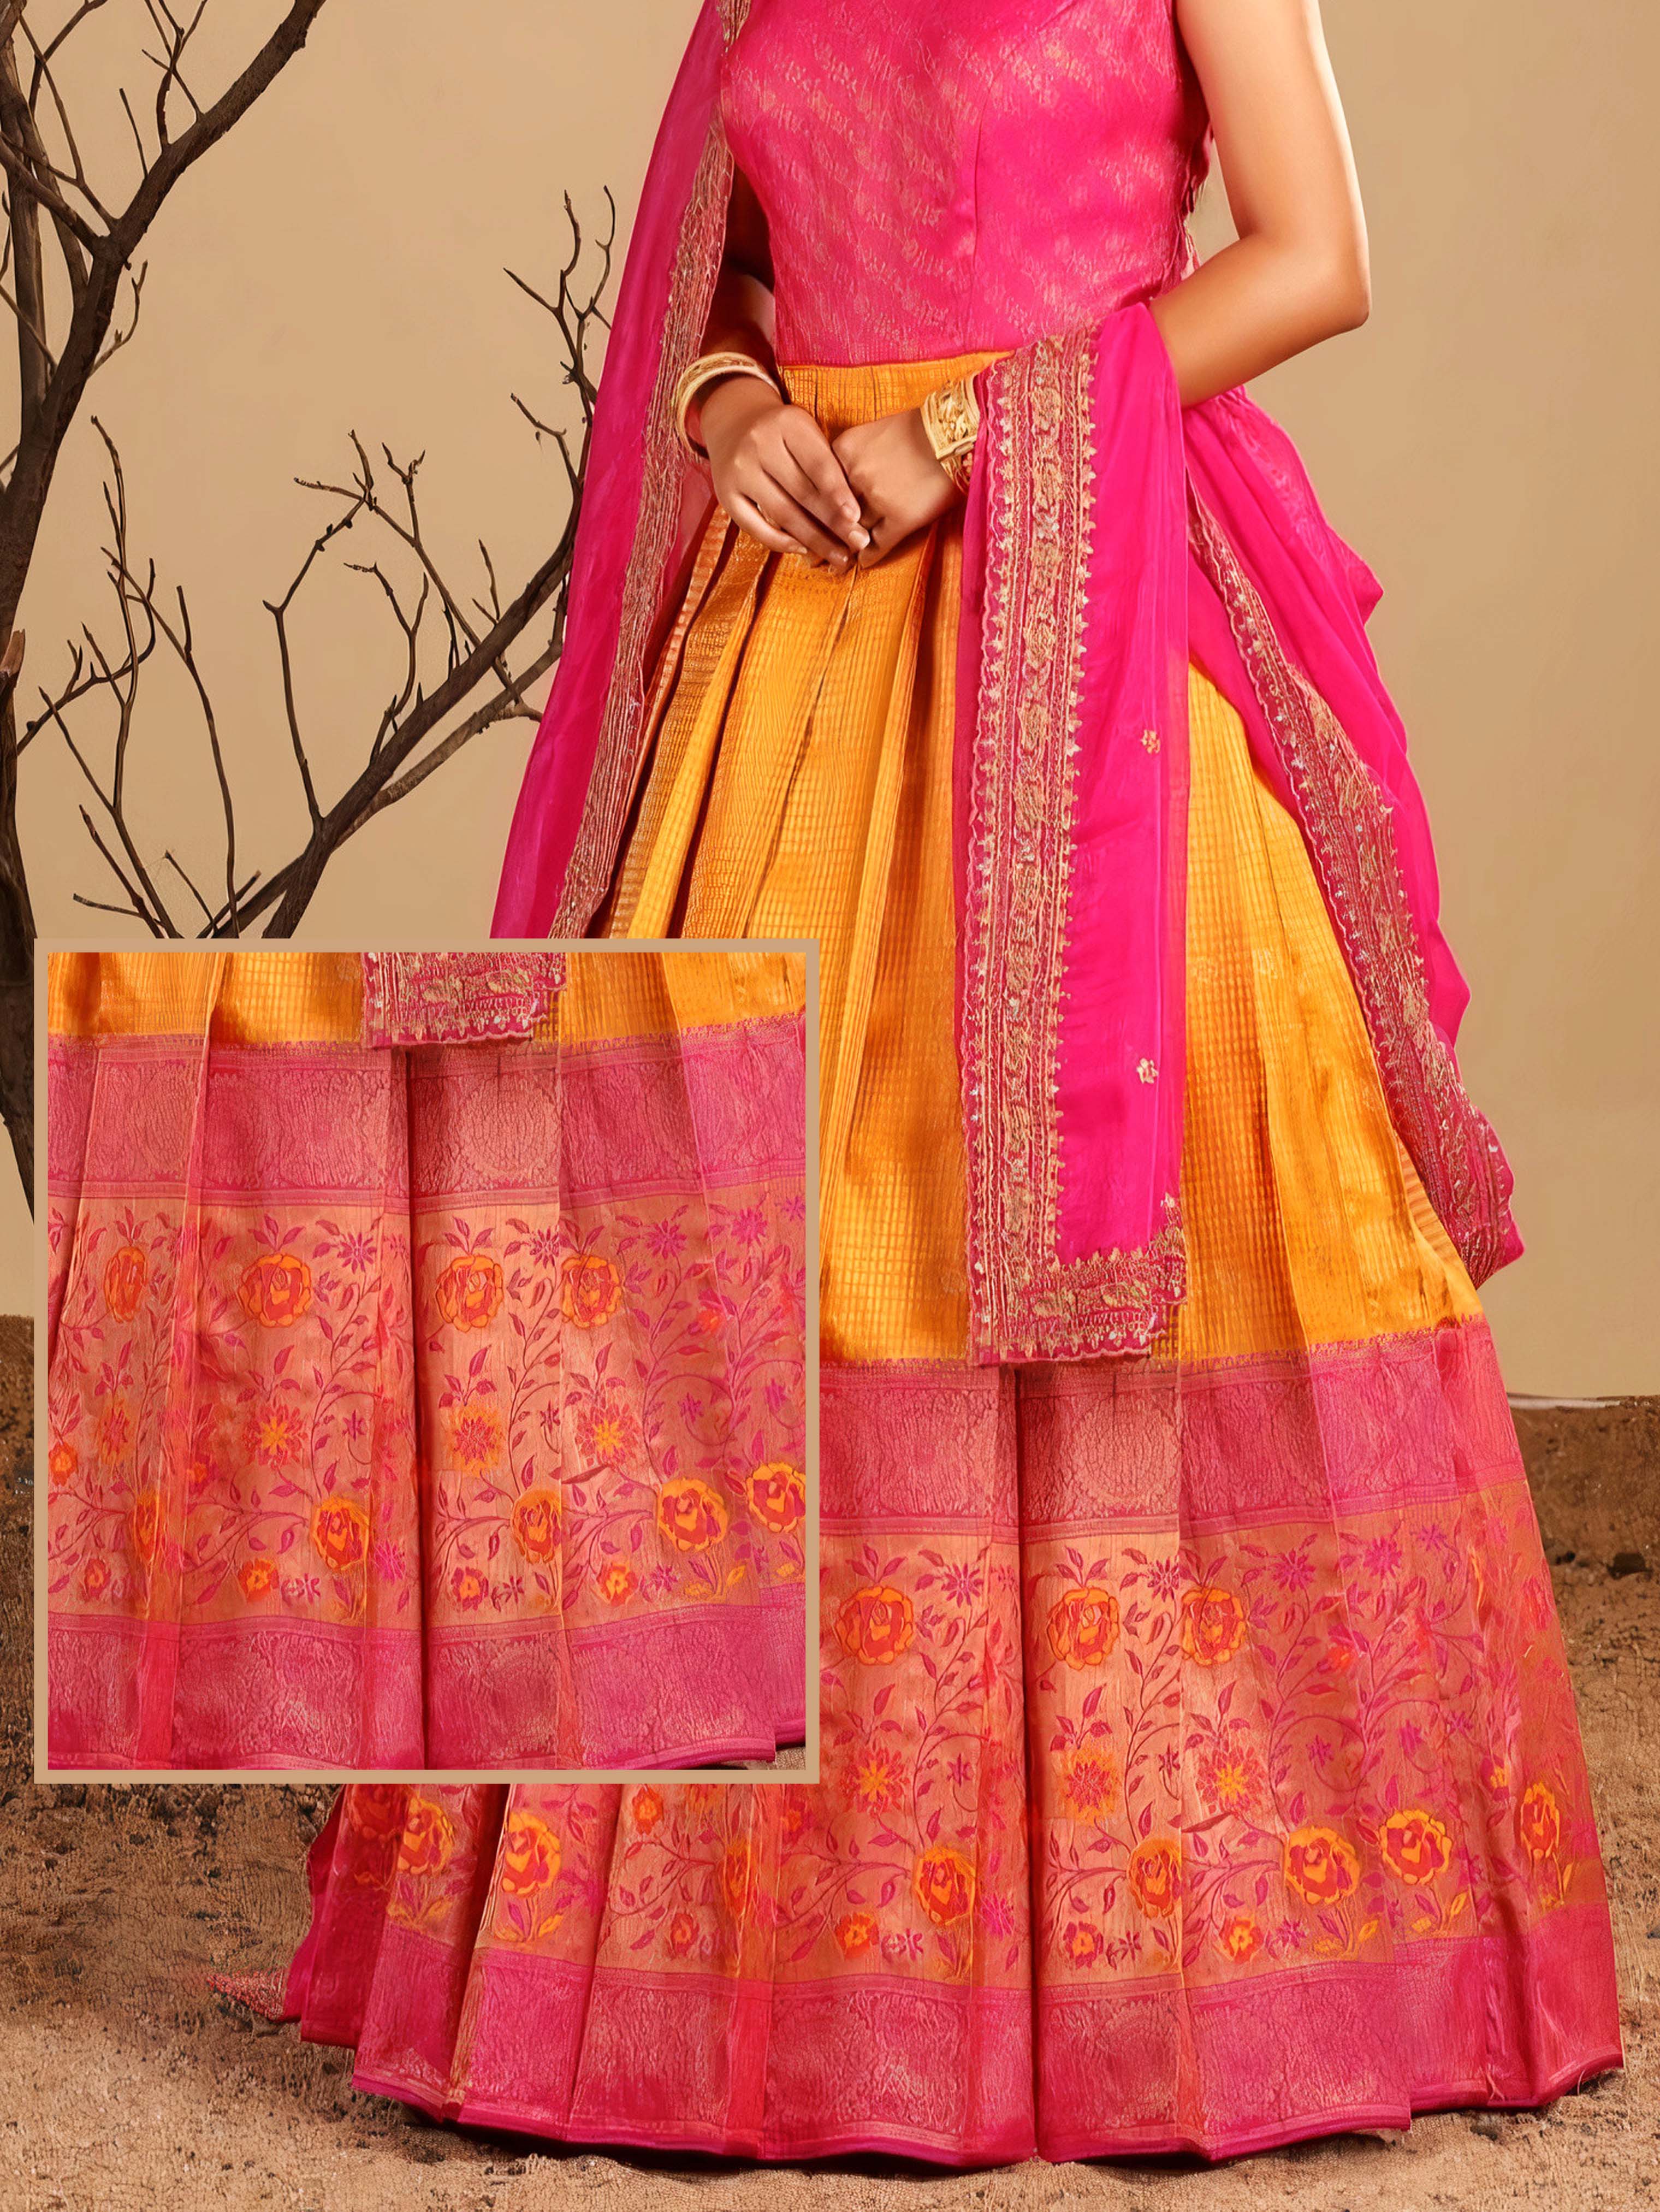 7 ways to wear Banarasi silk dupatta - Drape your fashion! | Fashionmate |  Latest Fashion Trends in India